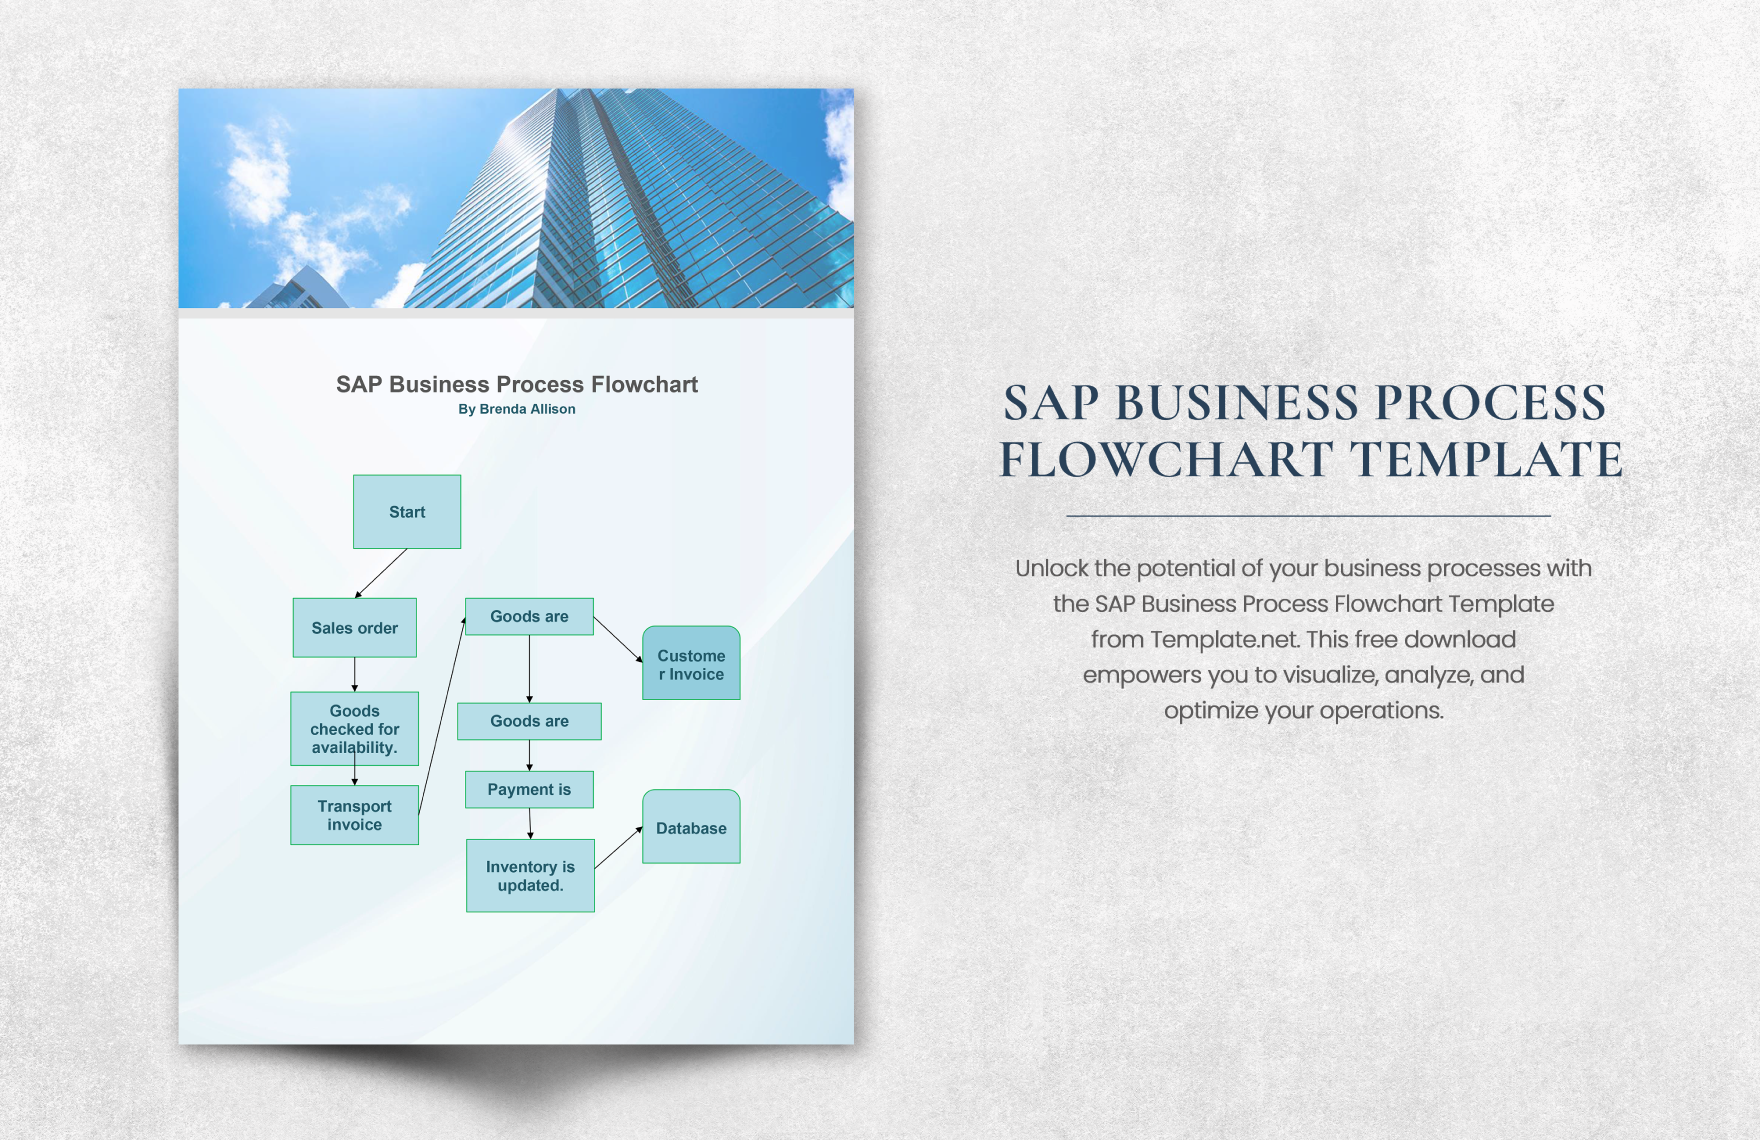 SAP Business Process Flowchart Template